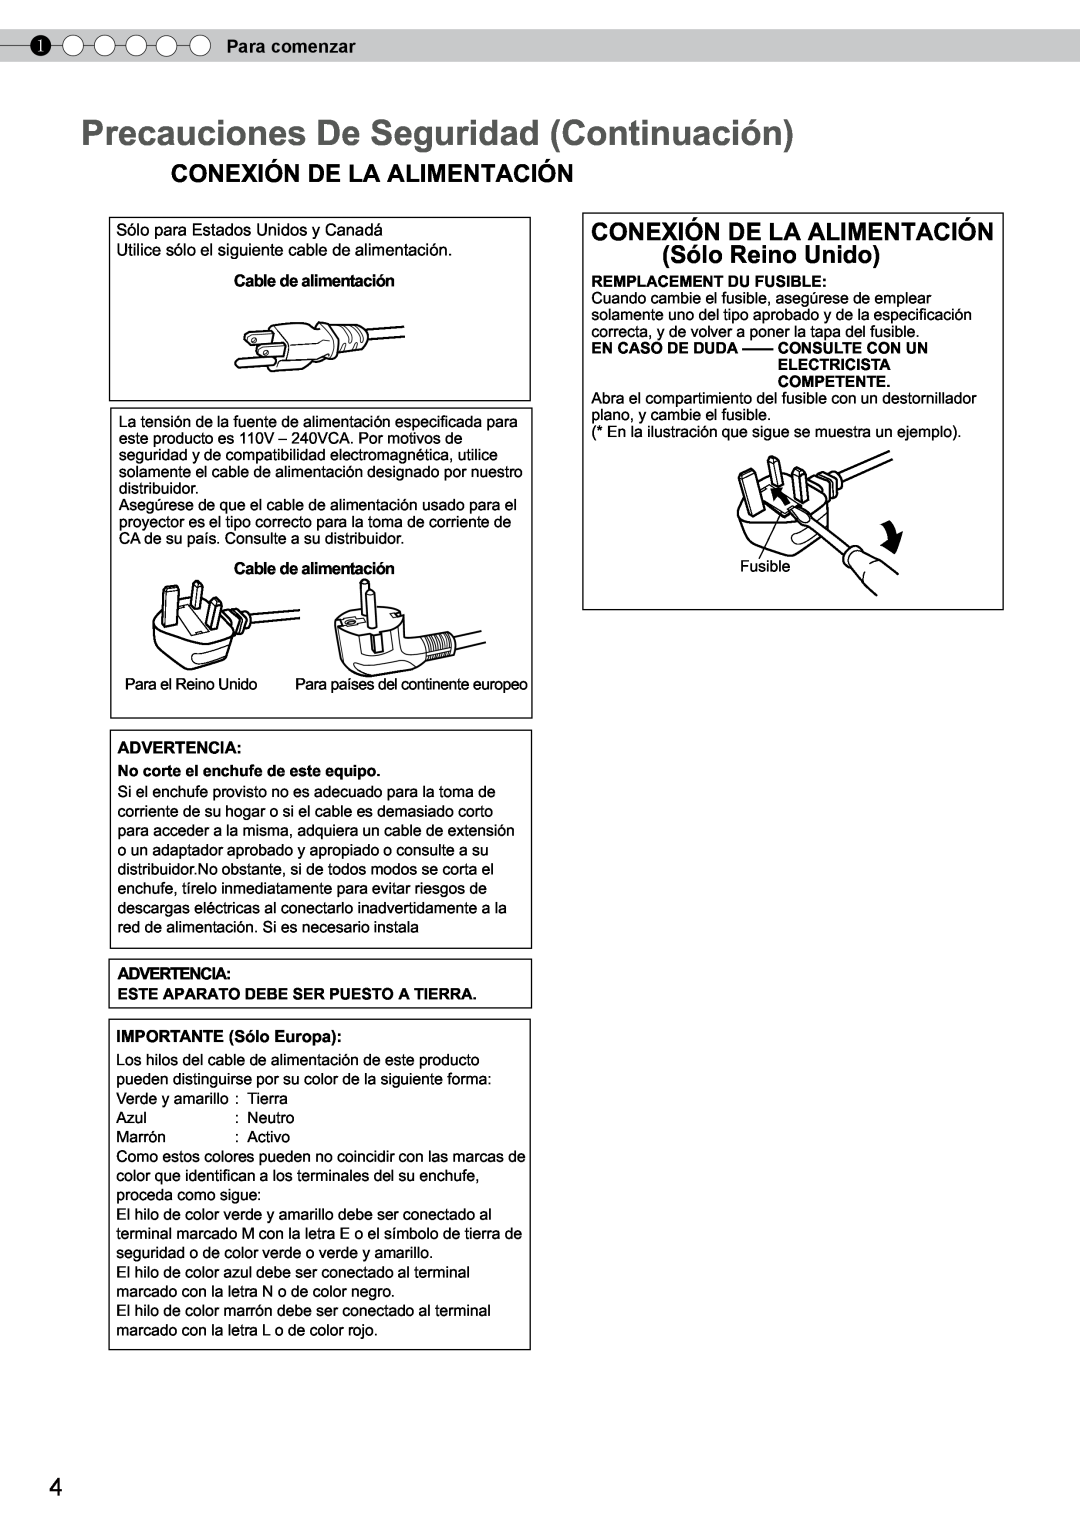 JVC DLA-RS10 manual Conexión De La Alimentación, CONEXIÓN DE LA ALIMENTACIÓN Sólo Reino Unido, Para comenzar 